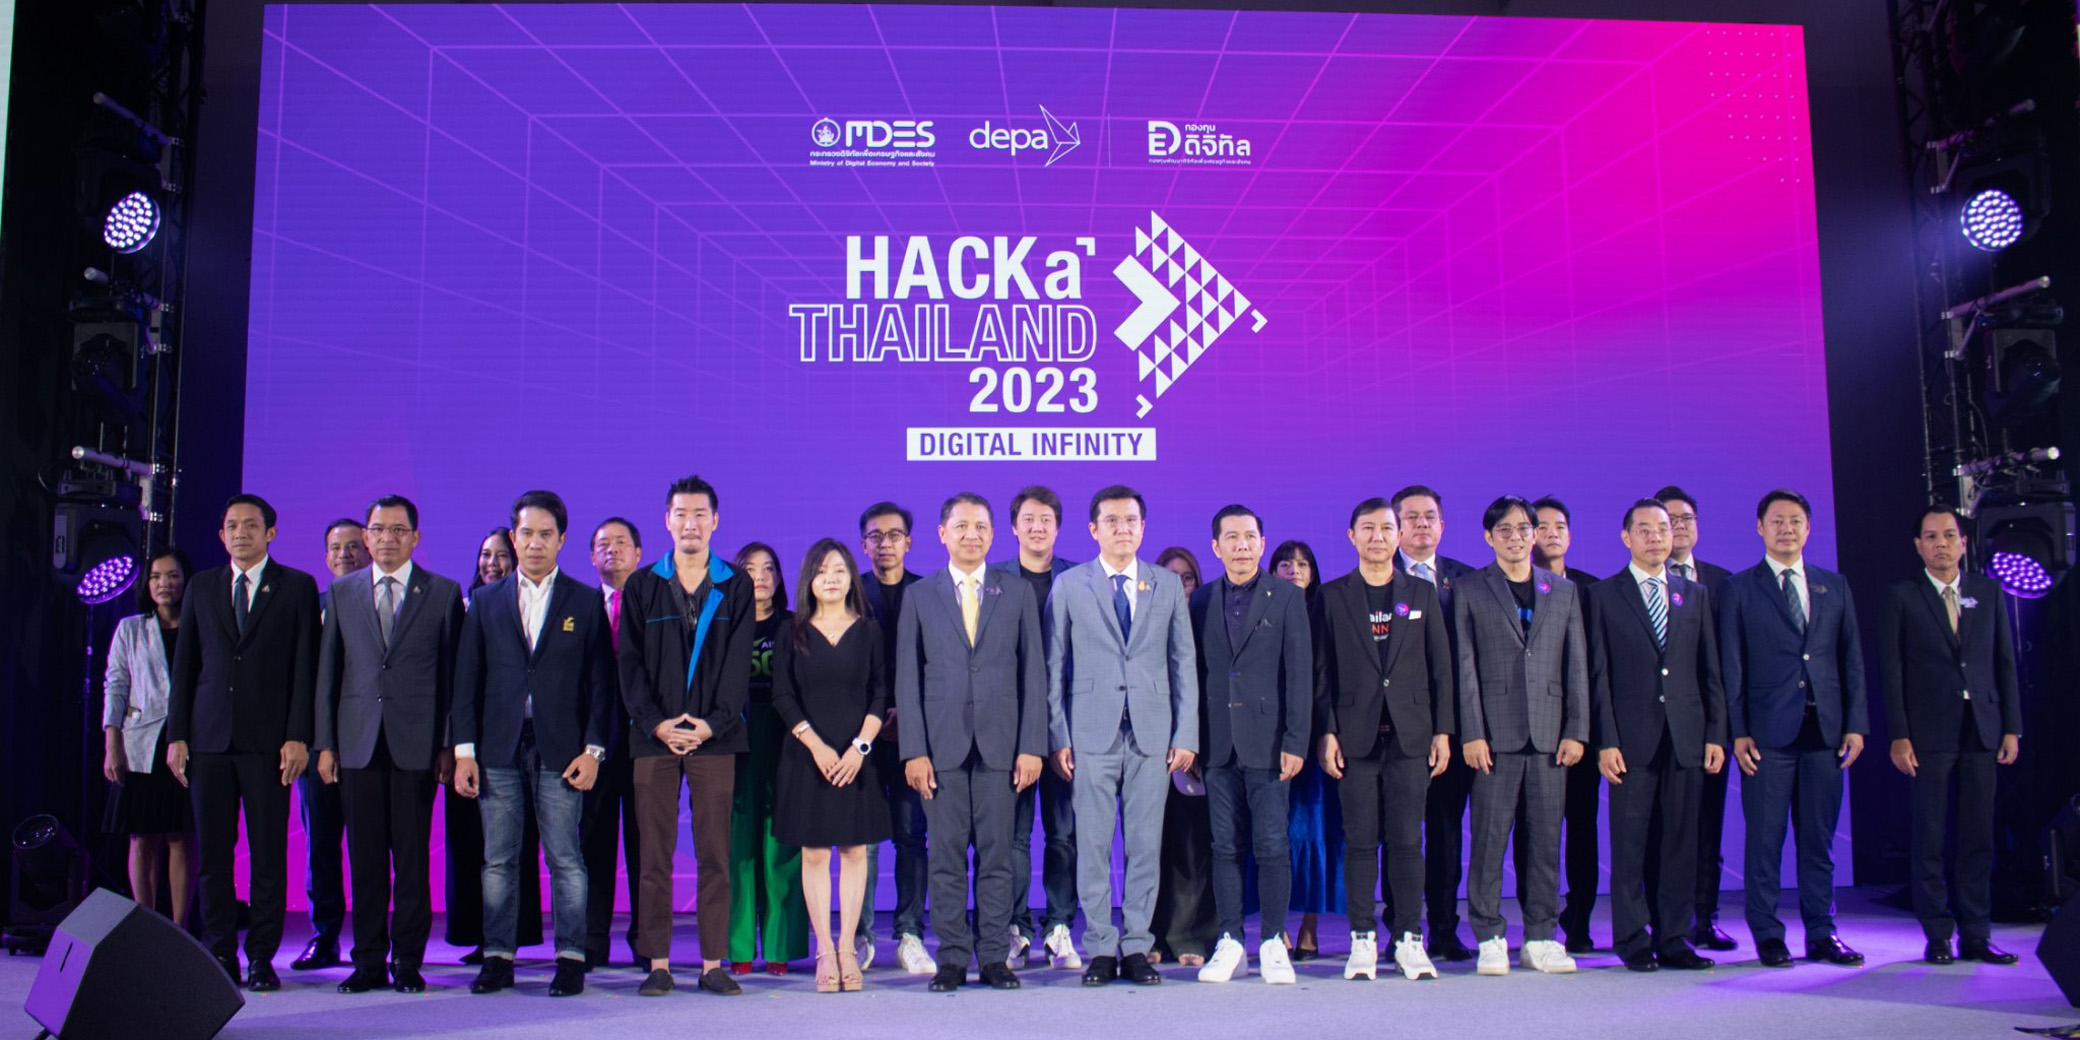 ThailandCONNEX ร่วมออกบูธ โชว์เทคโนโนโลยีดิจิทัลแพลทฟอร์ม ในงาน HACkaThailand 2023 :DIGITAL INFINTY Season 2 “โลกใบใหม่ กับความเป็นไปได้ทางดิจิทัล” มหกรรมงานแสดงเทคโนโลยี สุดยิ่งใหญ่แห่งปี